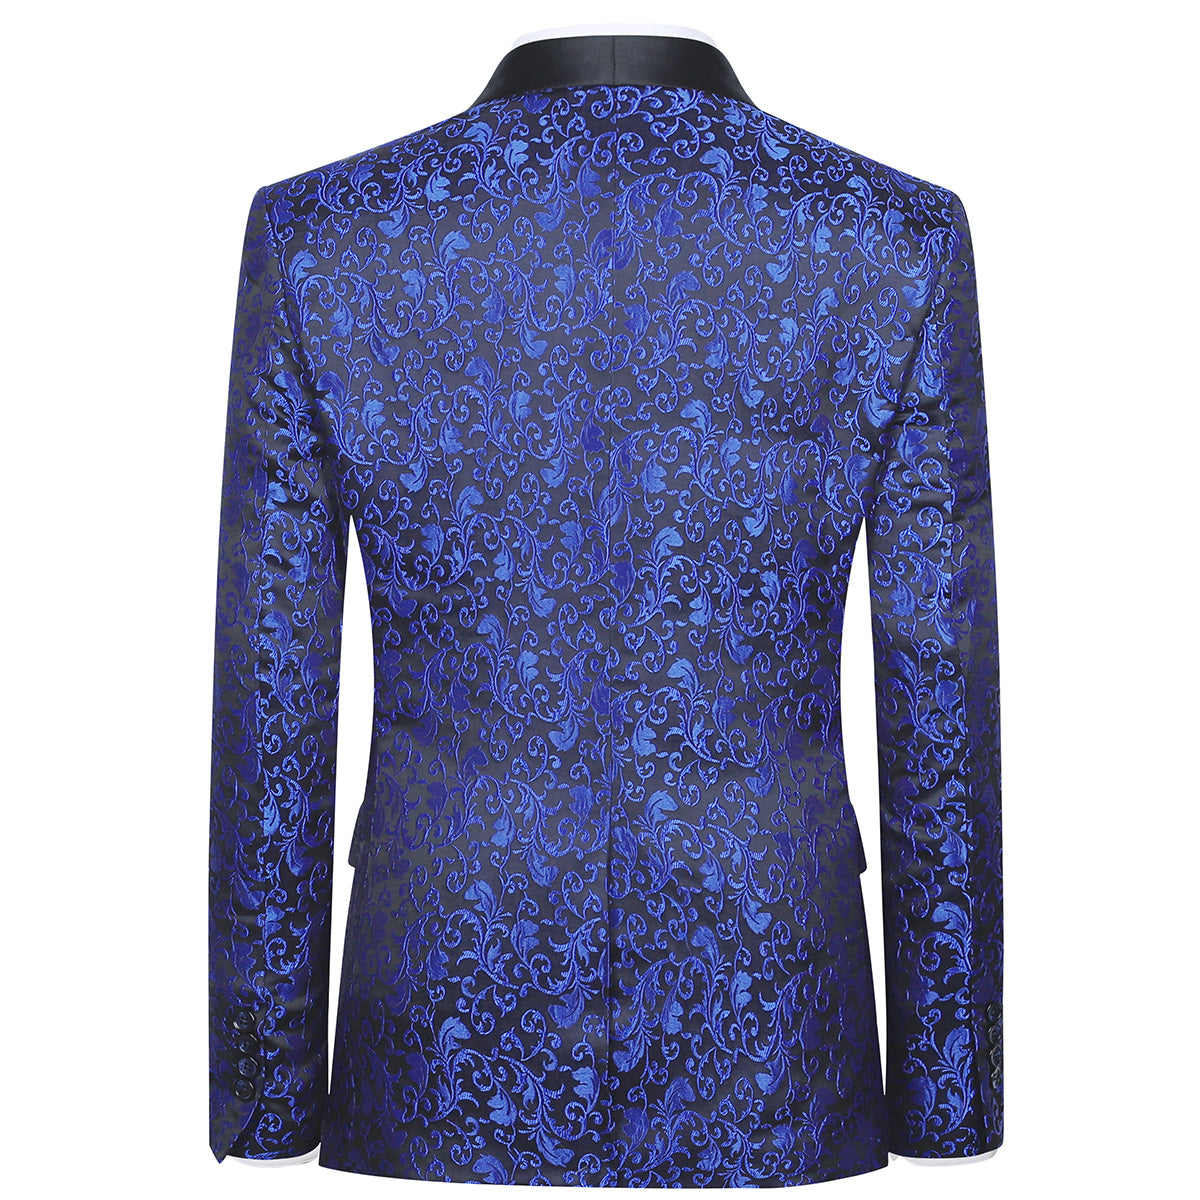 Men's Floral Jacquard Dress Suit Jacket Printed Tux Blazer Blue